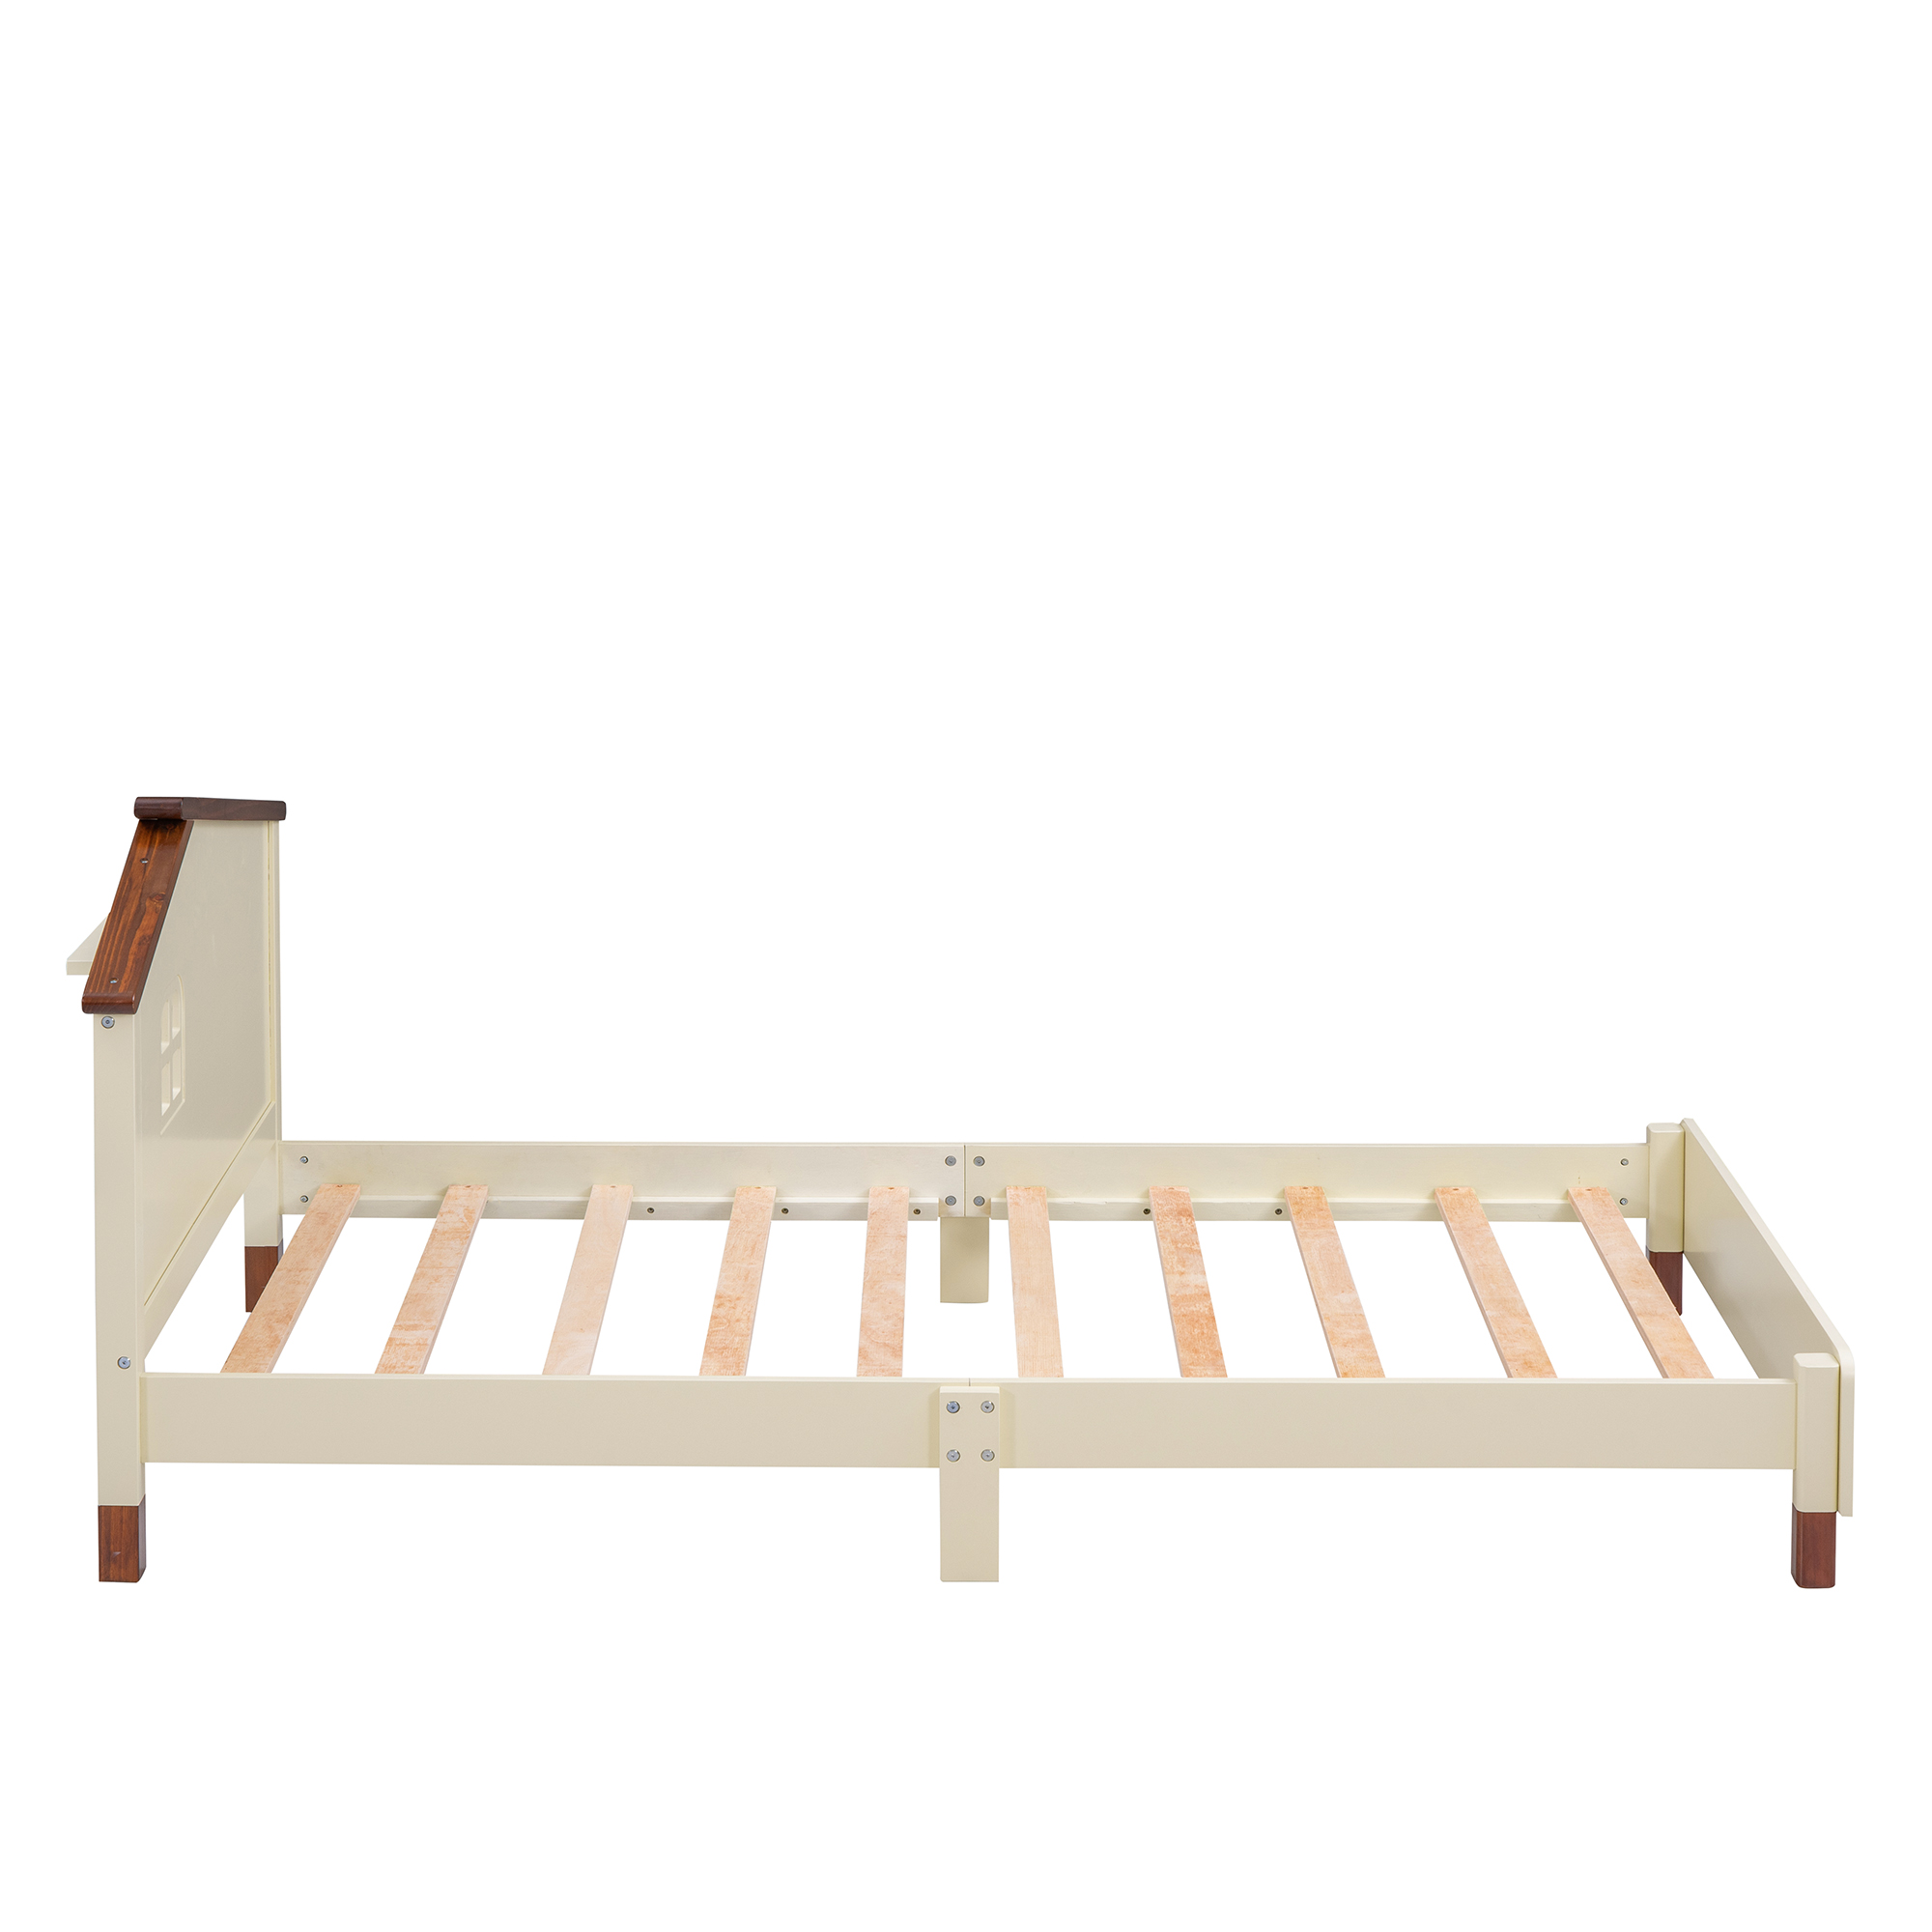 3-Pieces Bedroom Sets For Kids, Twin Size Platform Bed - HL000022AAD